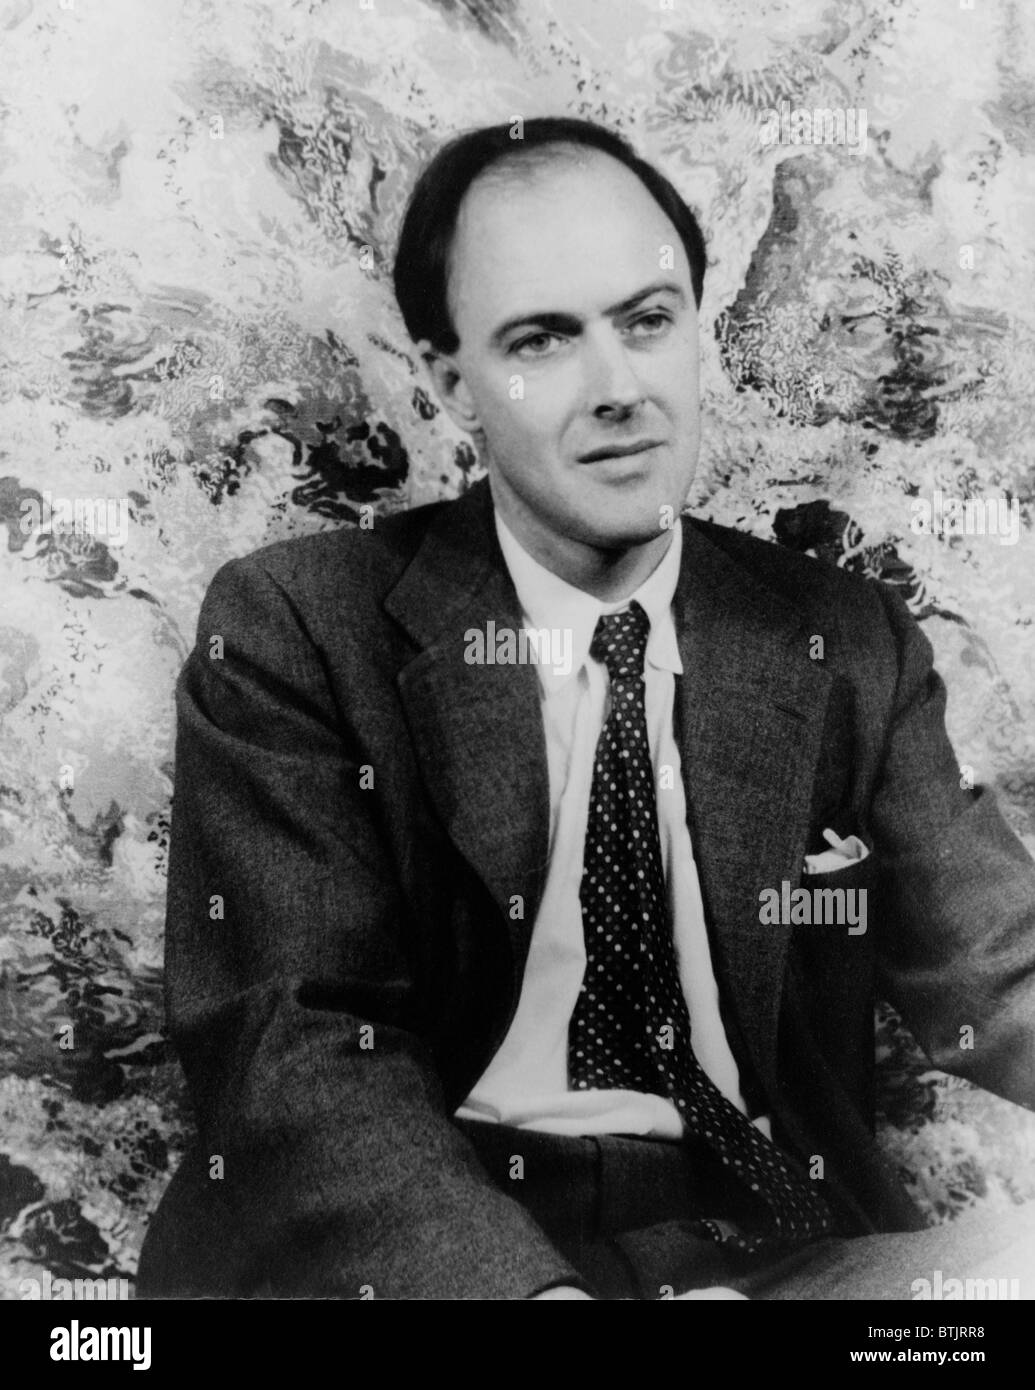 Roald Dahl (1916-1990), British autore di romanzi, storie per bambini e sceneggiature nel 1954 ritratto da Carl Van Vechten. Foto Stock